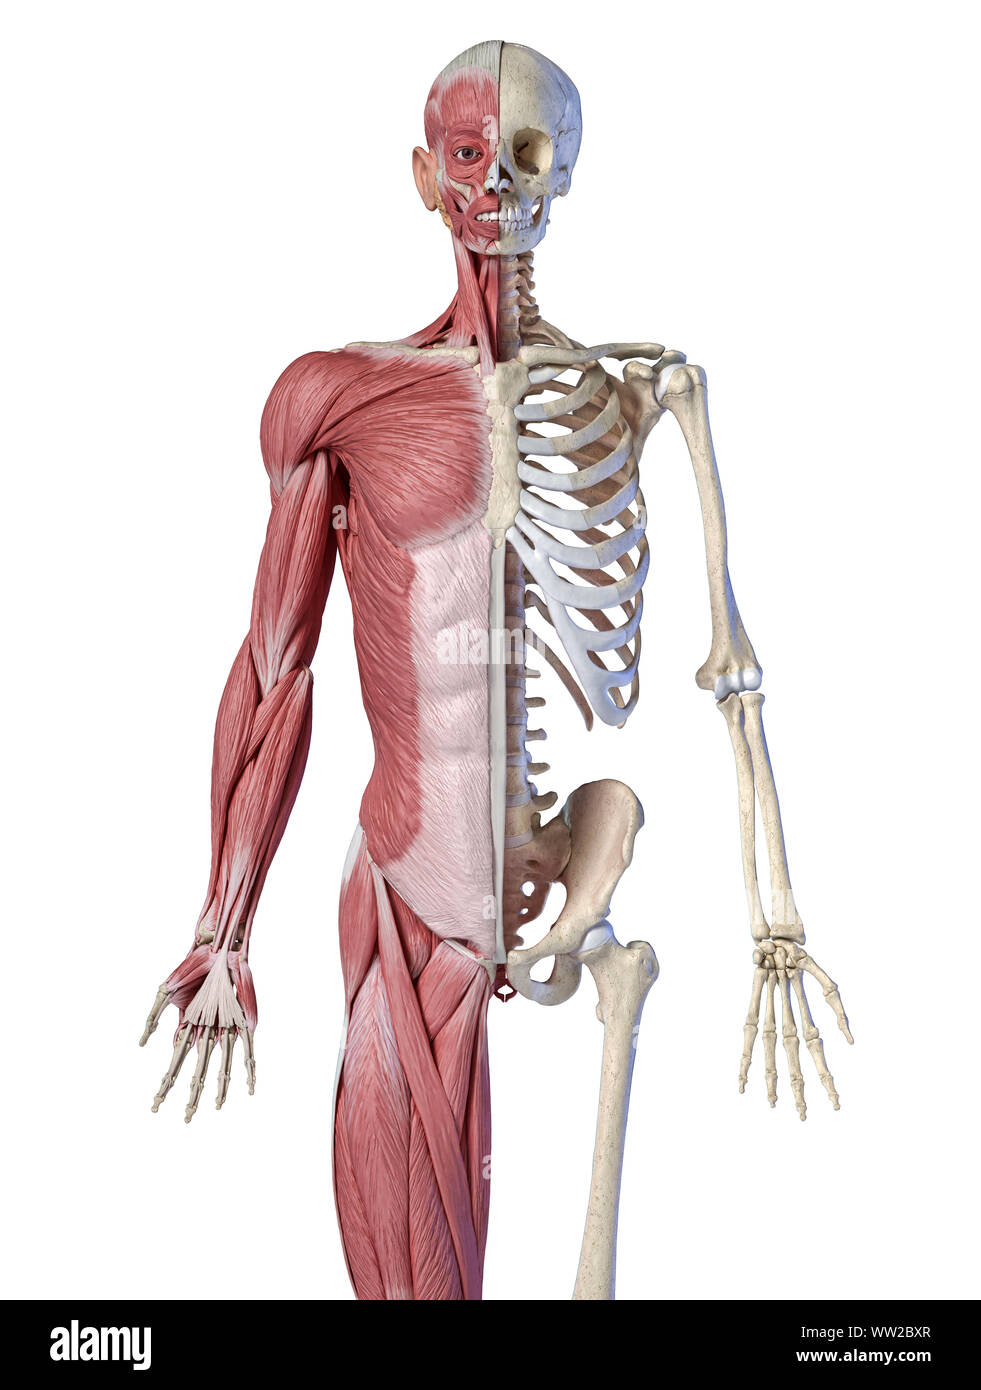 Die männliche Anatomie, 3/4 Abbildung Muskel- und Skeletterkrankungen Systeme, Vorderansicht auf weißem Hintergrund. 3D-Anatomie Illustration. Stockfoto